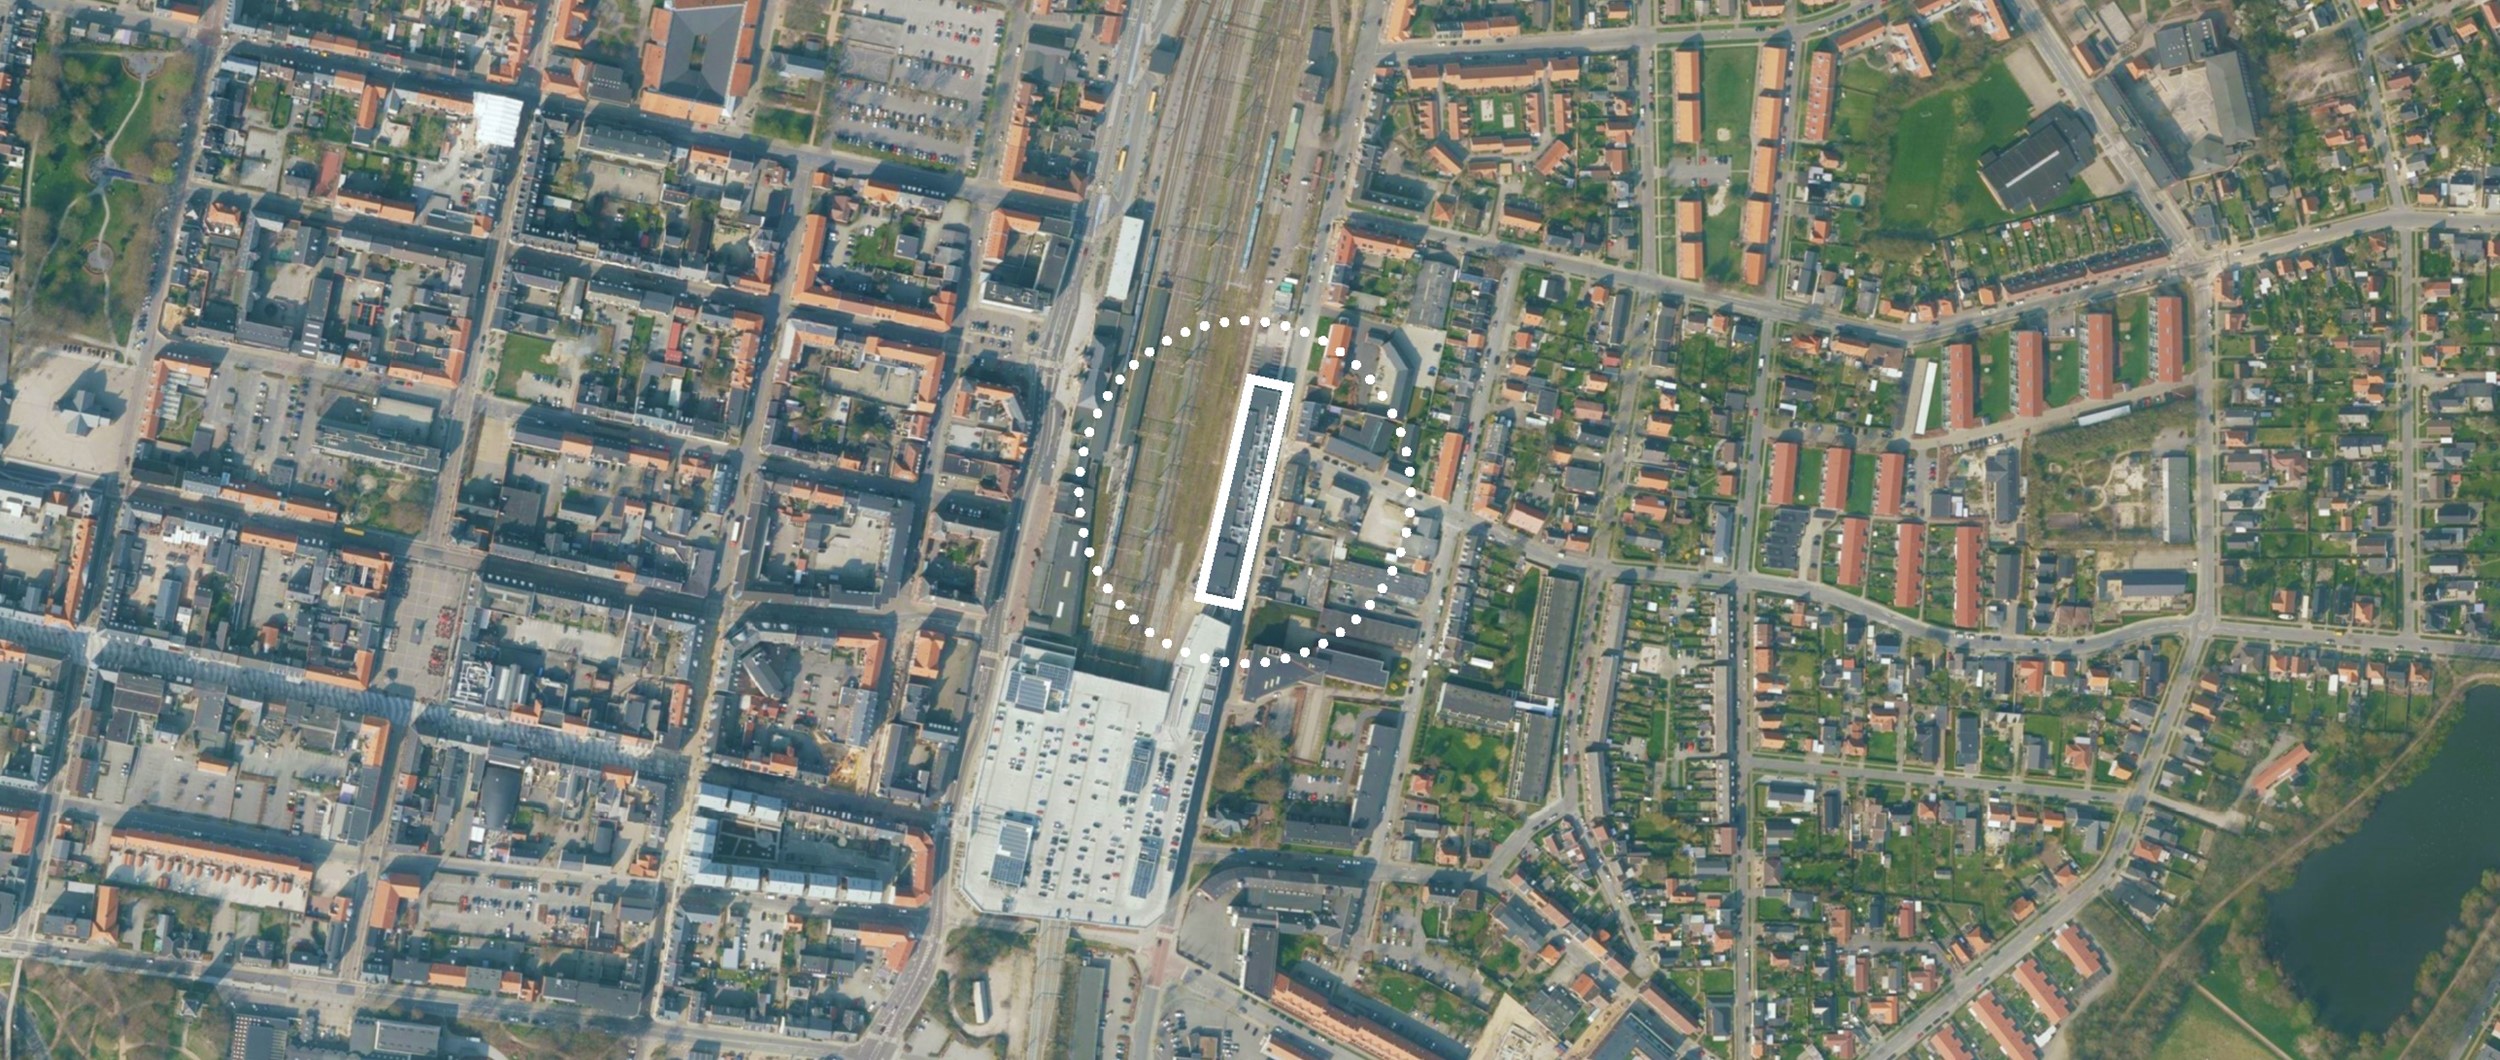 Centralt beliggende i Esbjerg finder man Biografcenter Esbjerg, der ligger langs jernbanen med forbindelse til BROEN shoppingcenter.